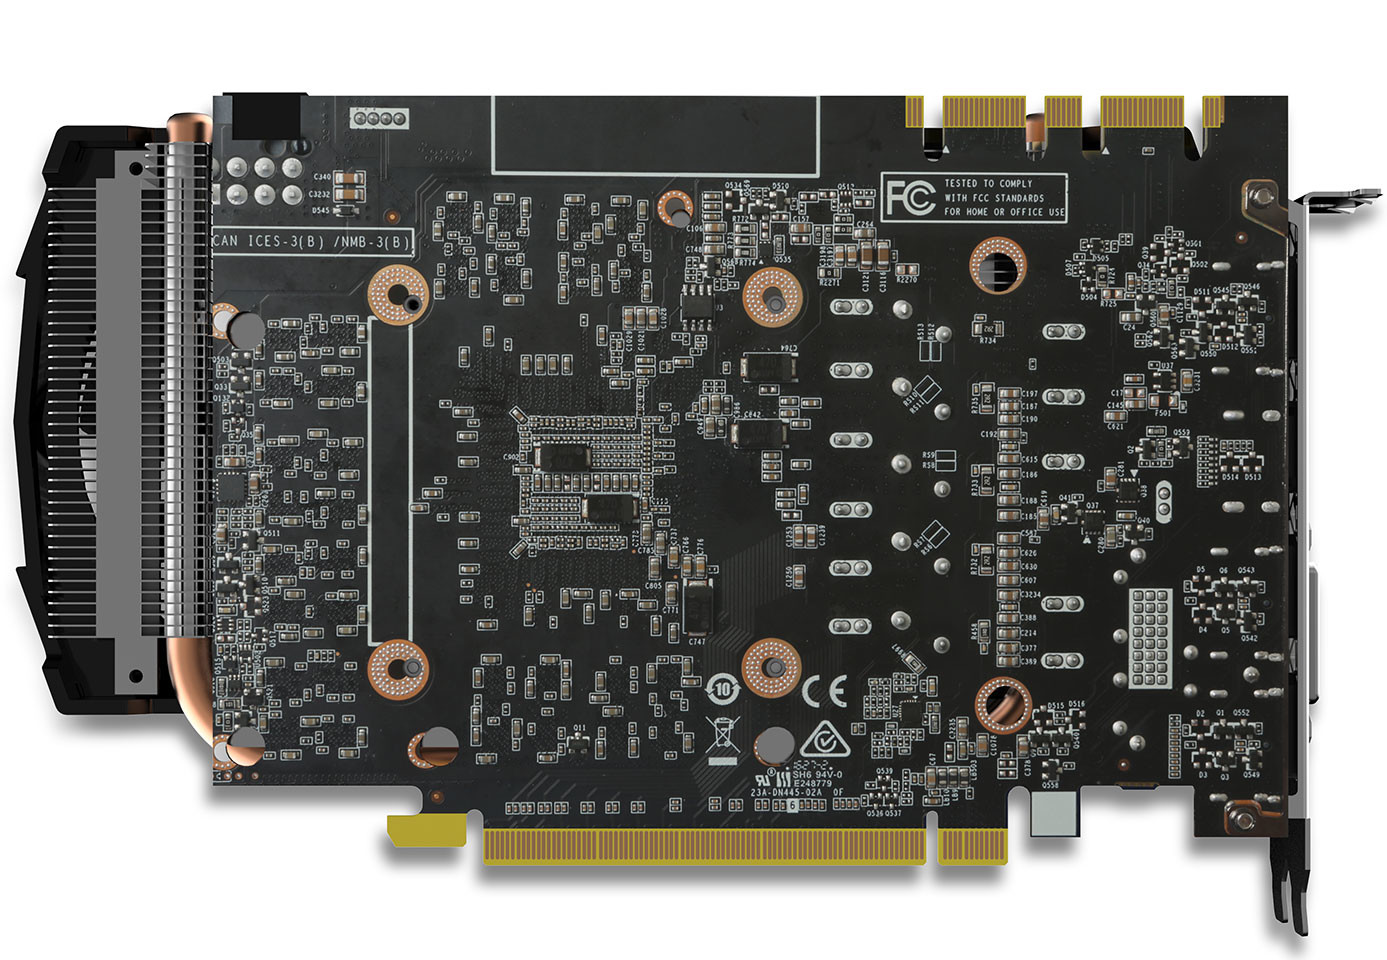 Immagine pubblicata in relazione al seguente contenuto: Zotac introduce una video card GeForce GTX 1070 in formato Mini | Nome immagine: news25467_Zotac-GeForce-GTX-1070-Mini_4.jpg